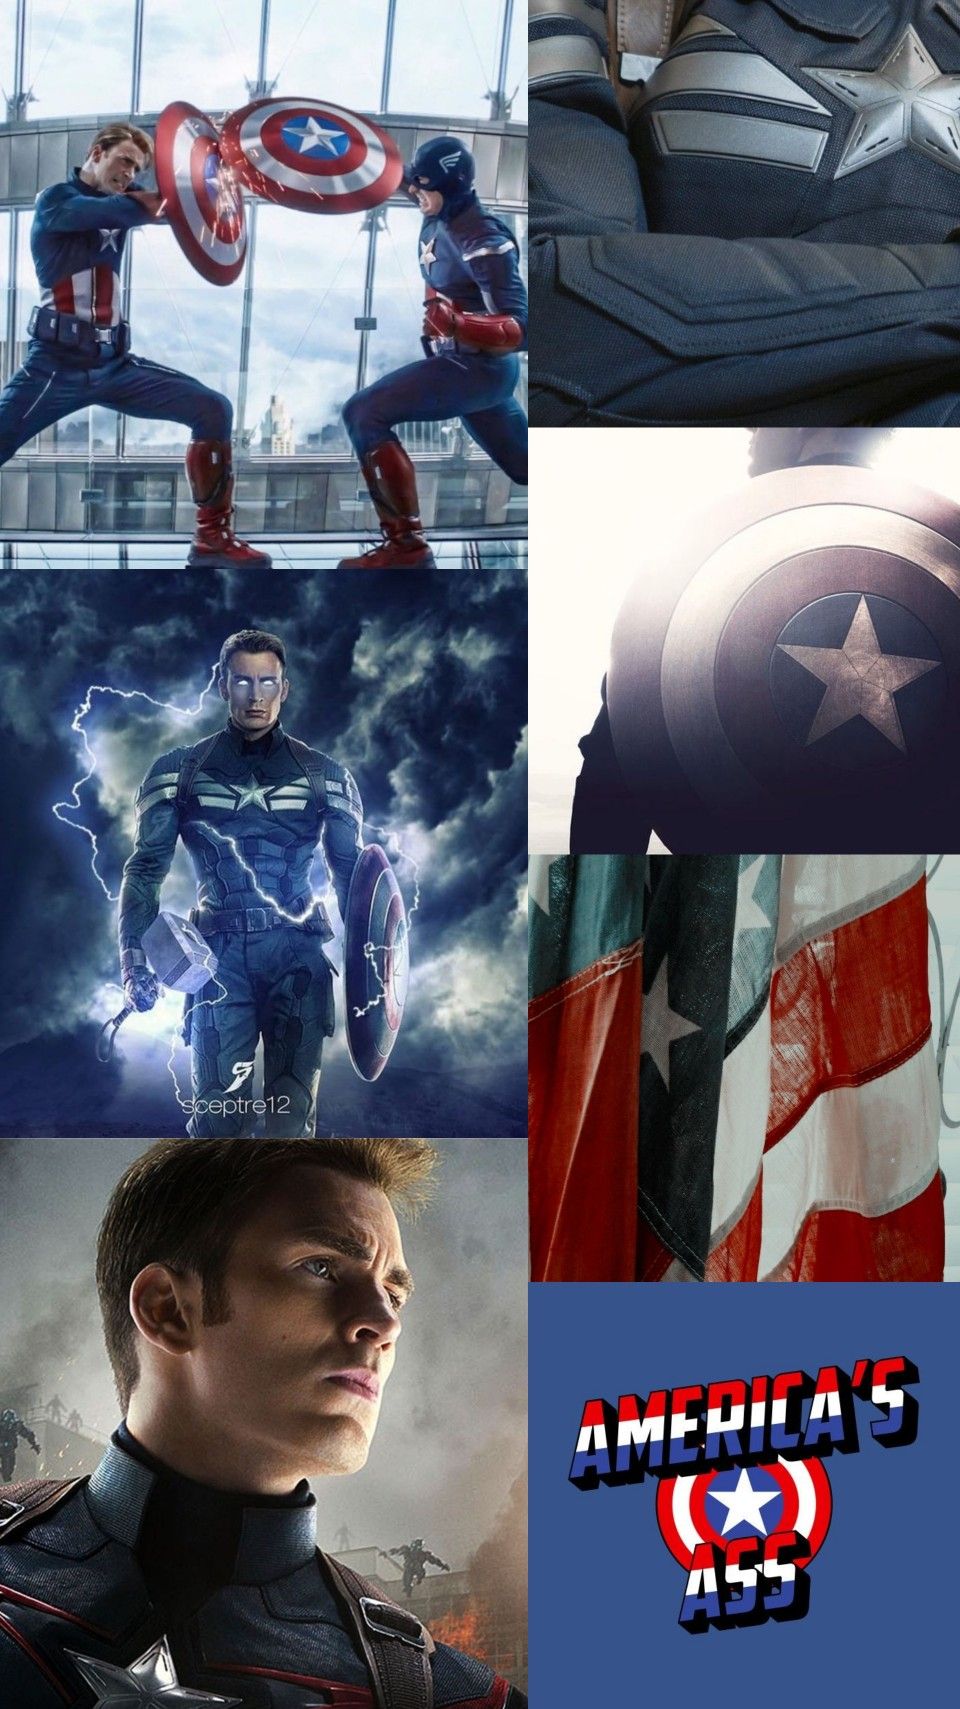 Marvel captain america aesthetic. Marvel captain america, Captain america aesthetic, Marvel